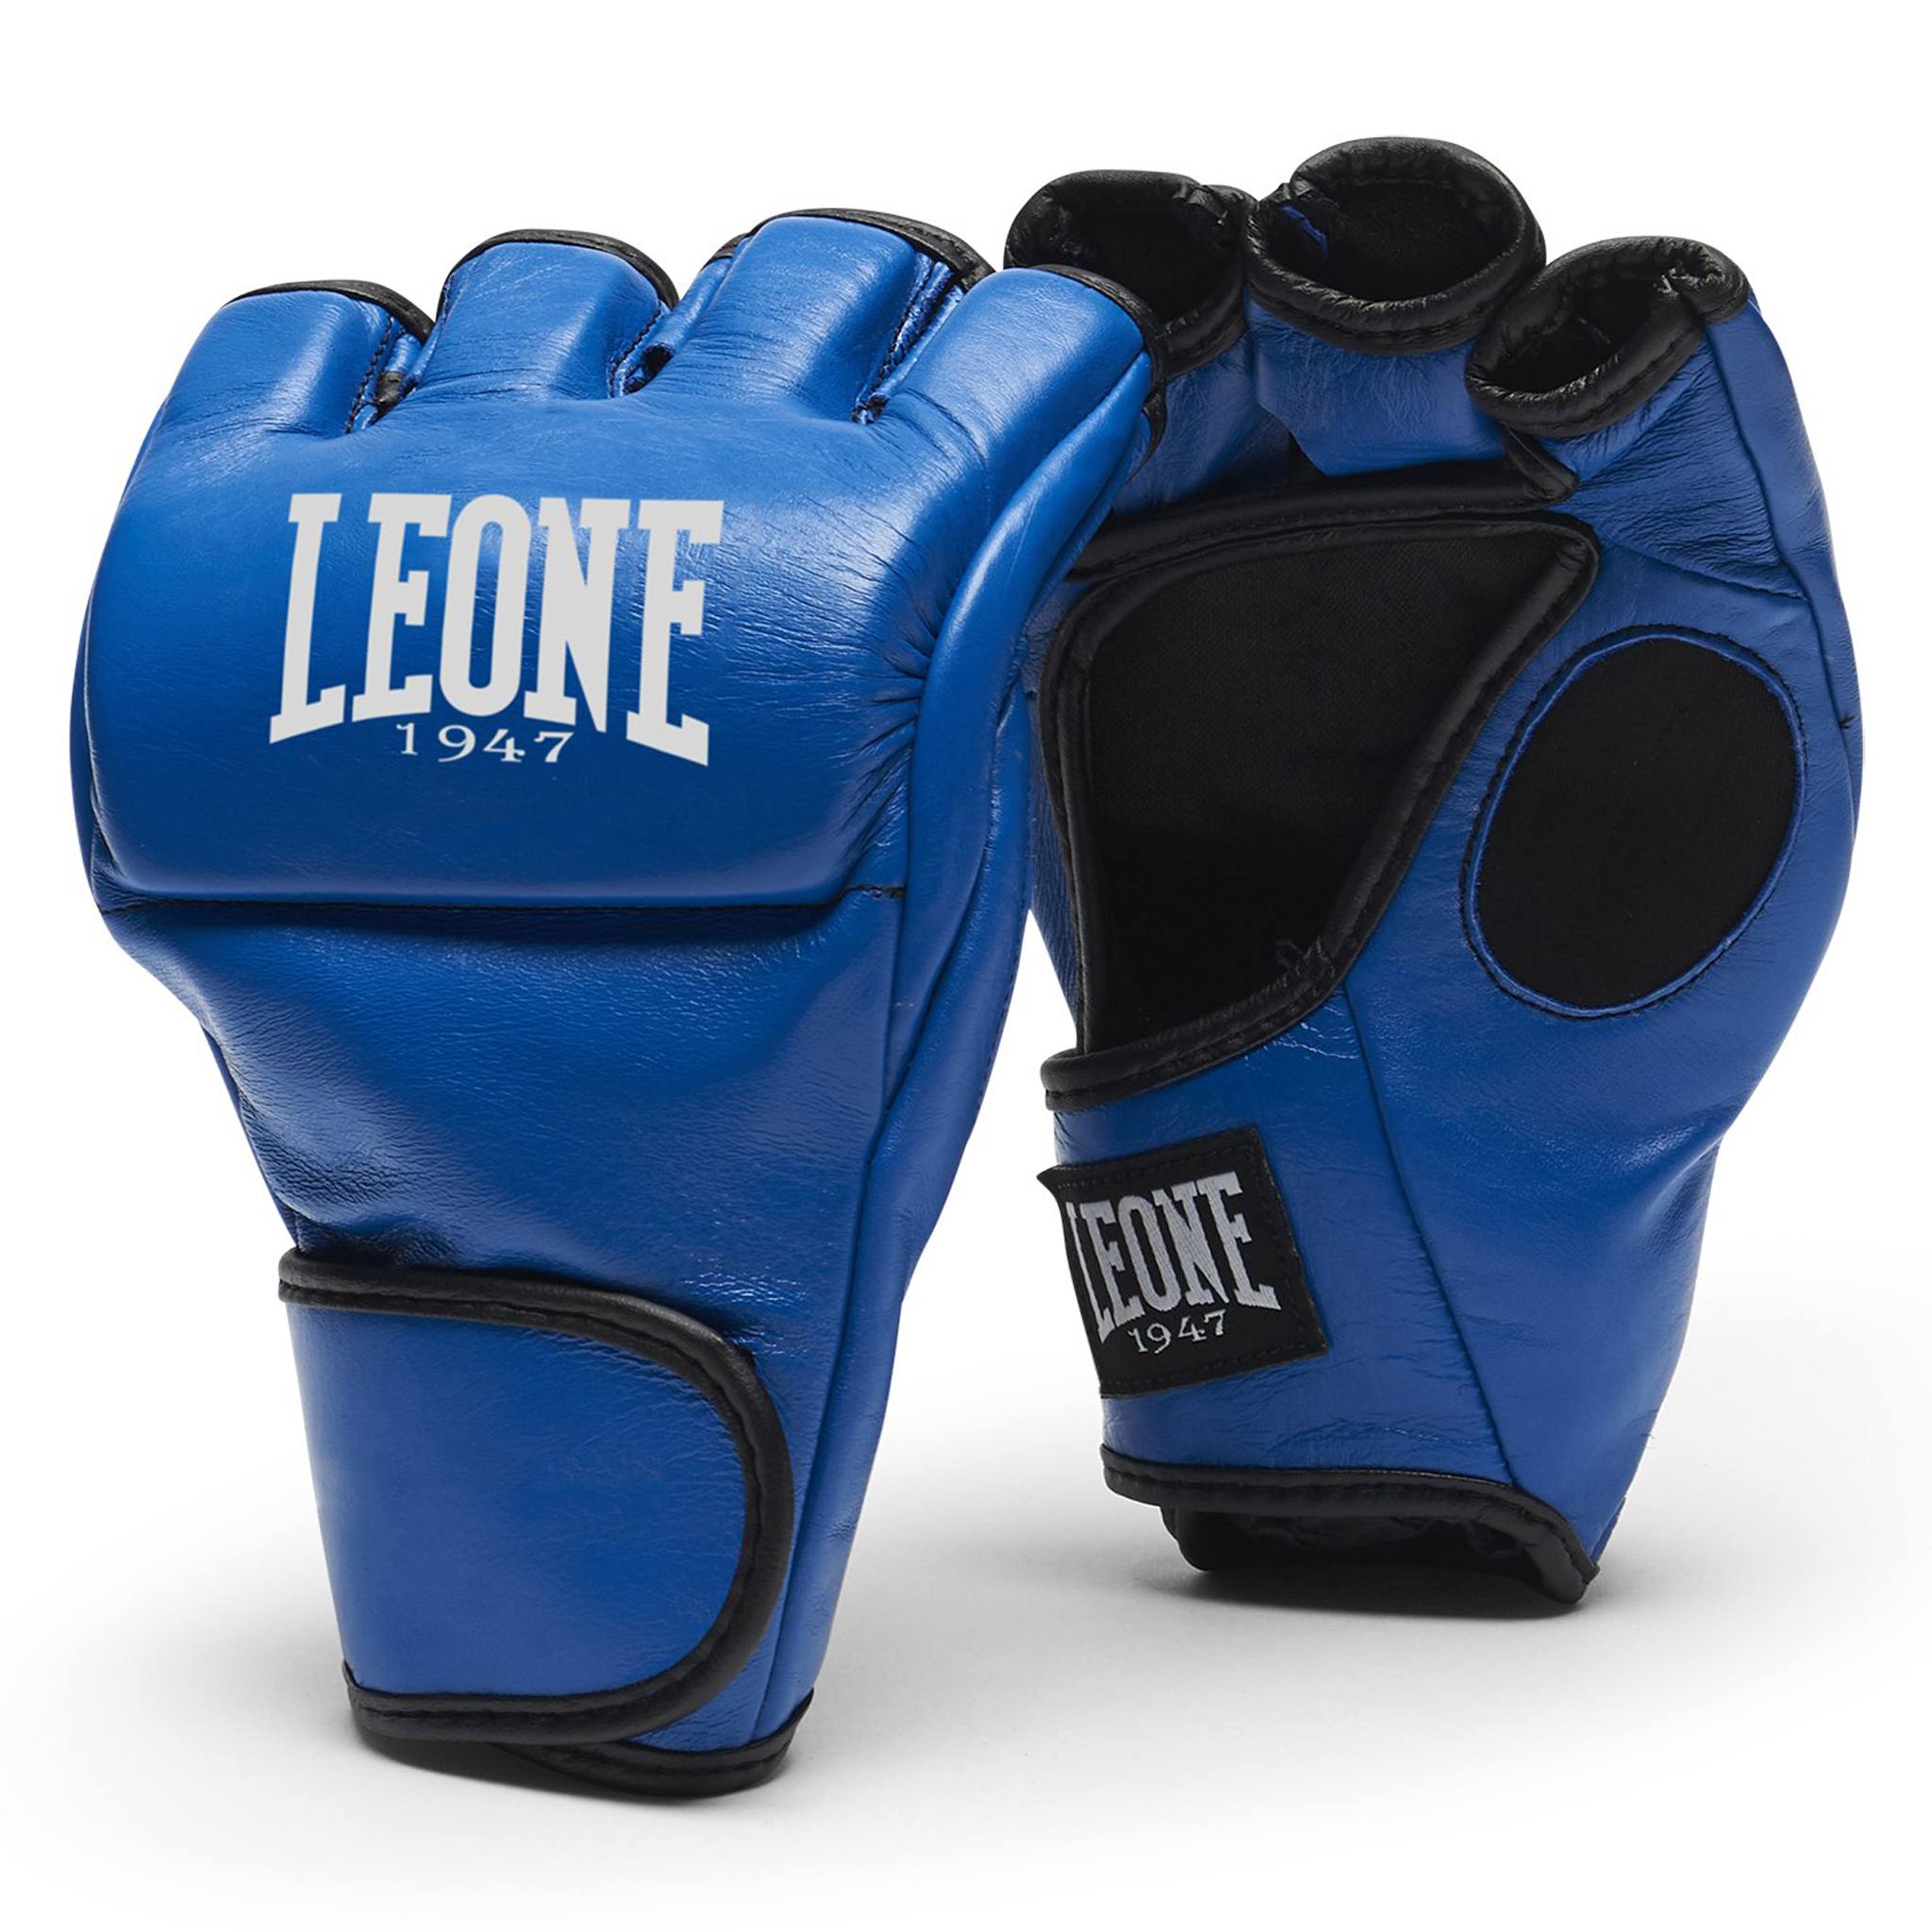 Guantillas de MMA Leone "Contest" Bellator oficial Color Azul GP115